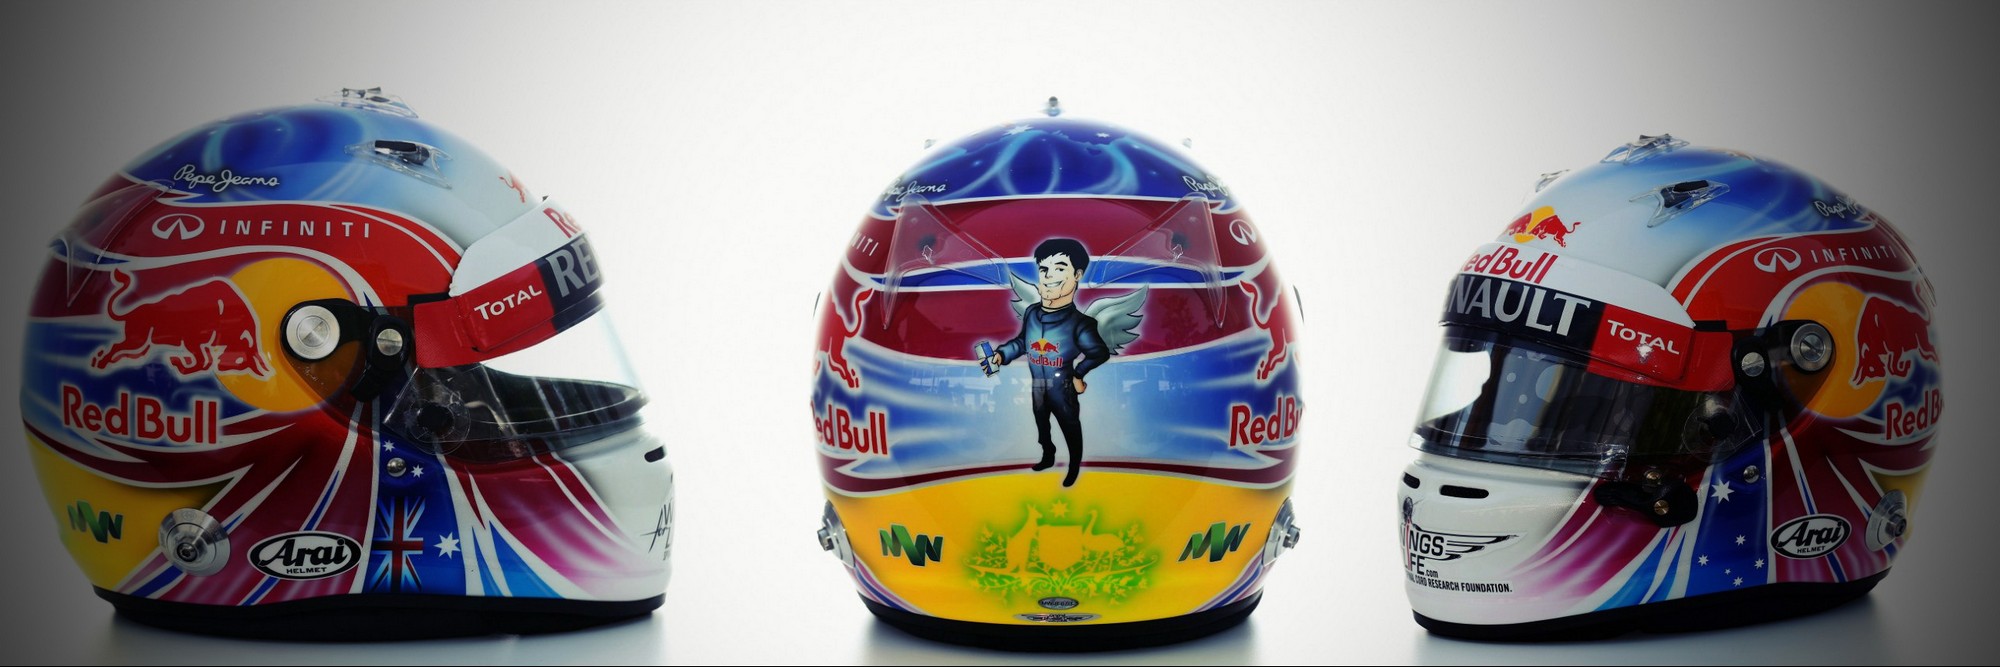 Шлем Марка Уэббера на Гран-При Сингапура 2012 | 2012 Singapore Grand Prix helmet of Mark Webber